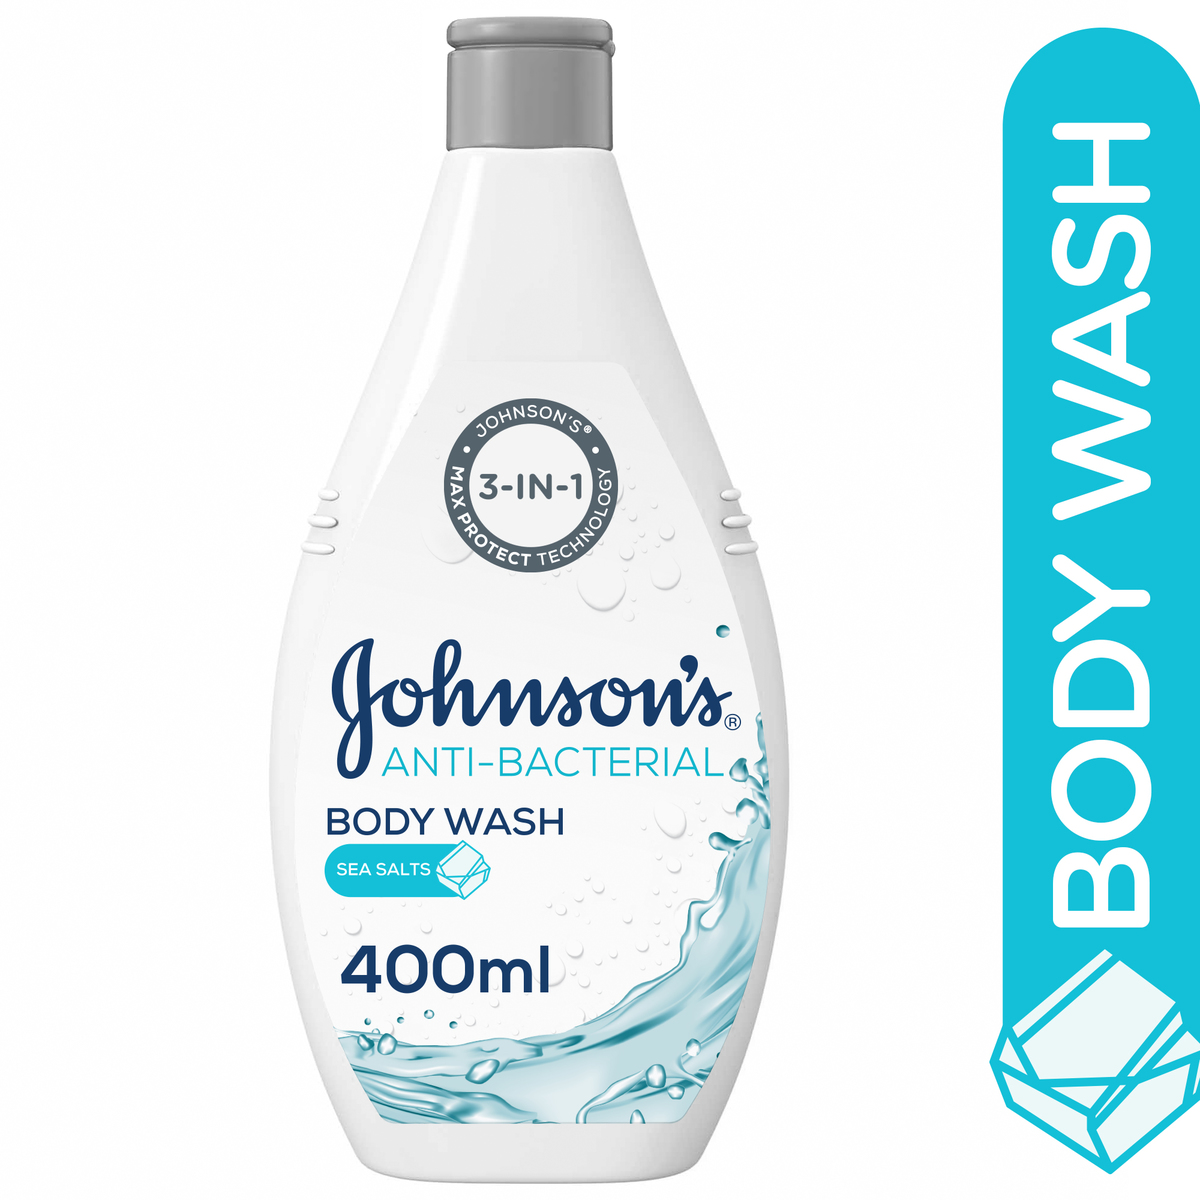 اشتري قم بشراء جونسون غسول الجسم المضاد للبكتيريا بأملاح البحر 400 مل Online at Best Price من الموقع - من لولو هايبر ماركت Shower Gel&Body Wash في الامارات